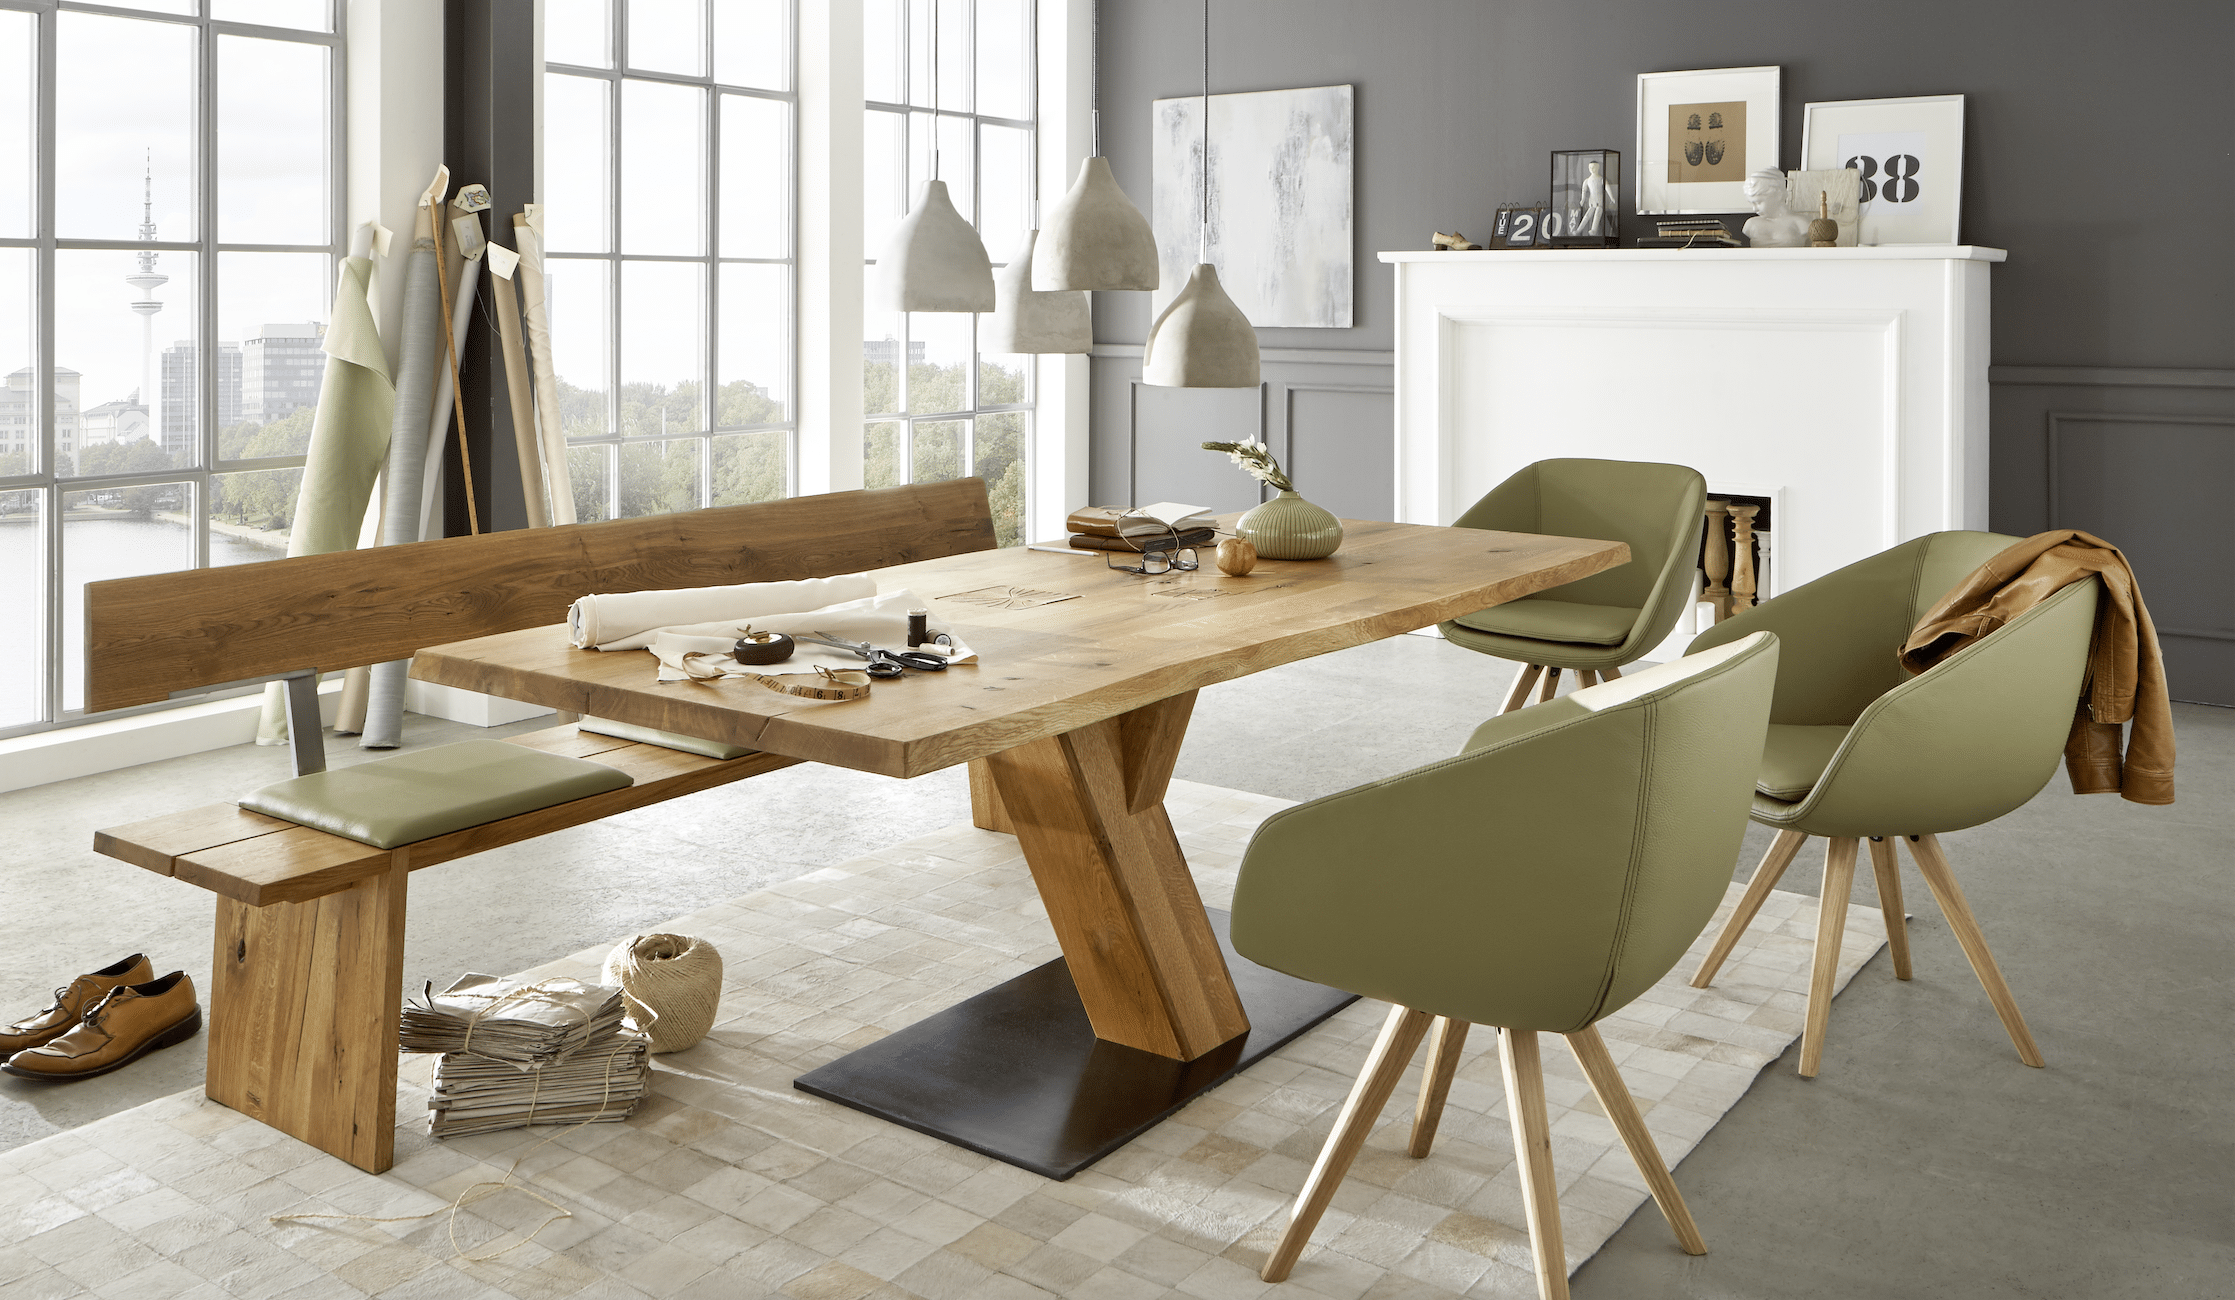 WOHNHAUS Grill & Ronacher zeigt ein modern, rustikales Esszimmer mit großem Tisch, einer Sitzbank, sowie 3 Stühlen von Wimmer Wohnkollektionen.